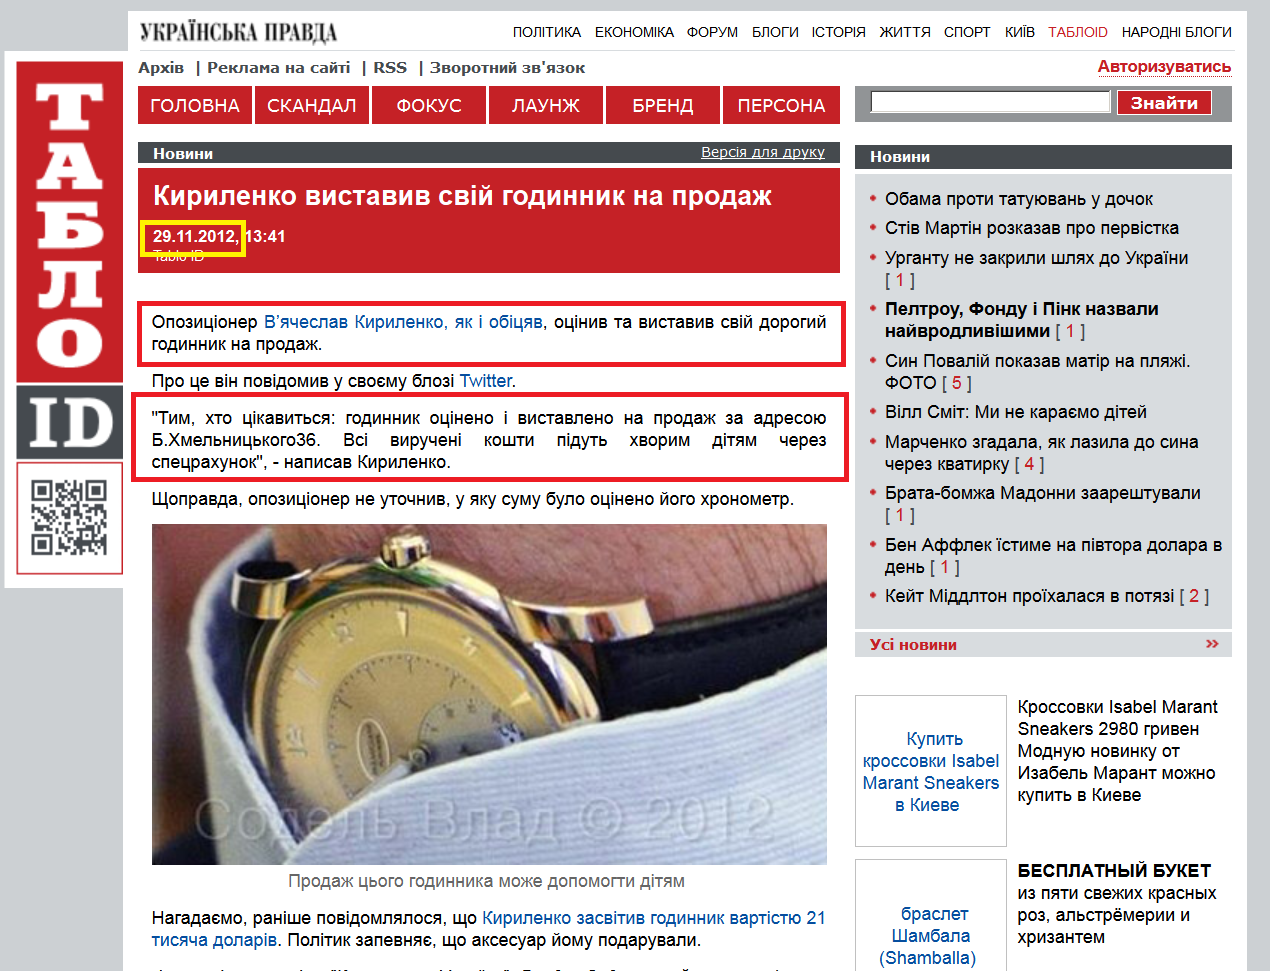 http://tabloid.pravda.com.ua/news/50b7451e2a710/